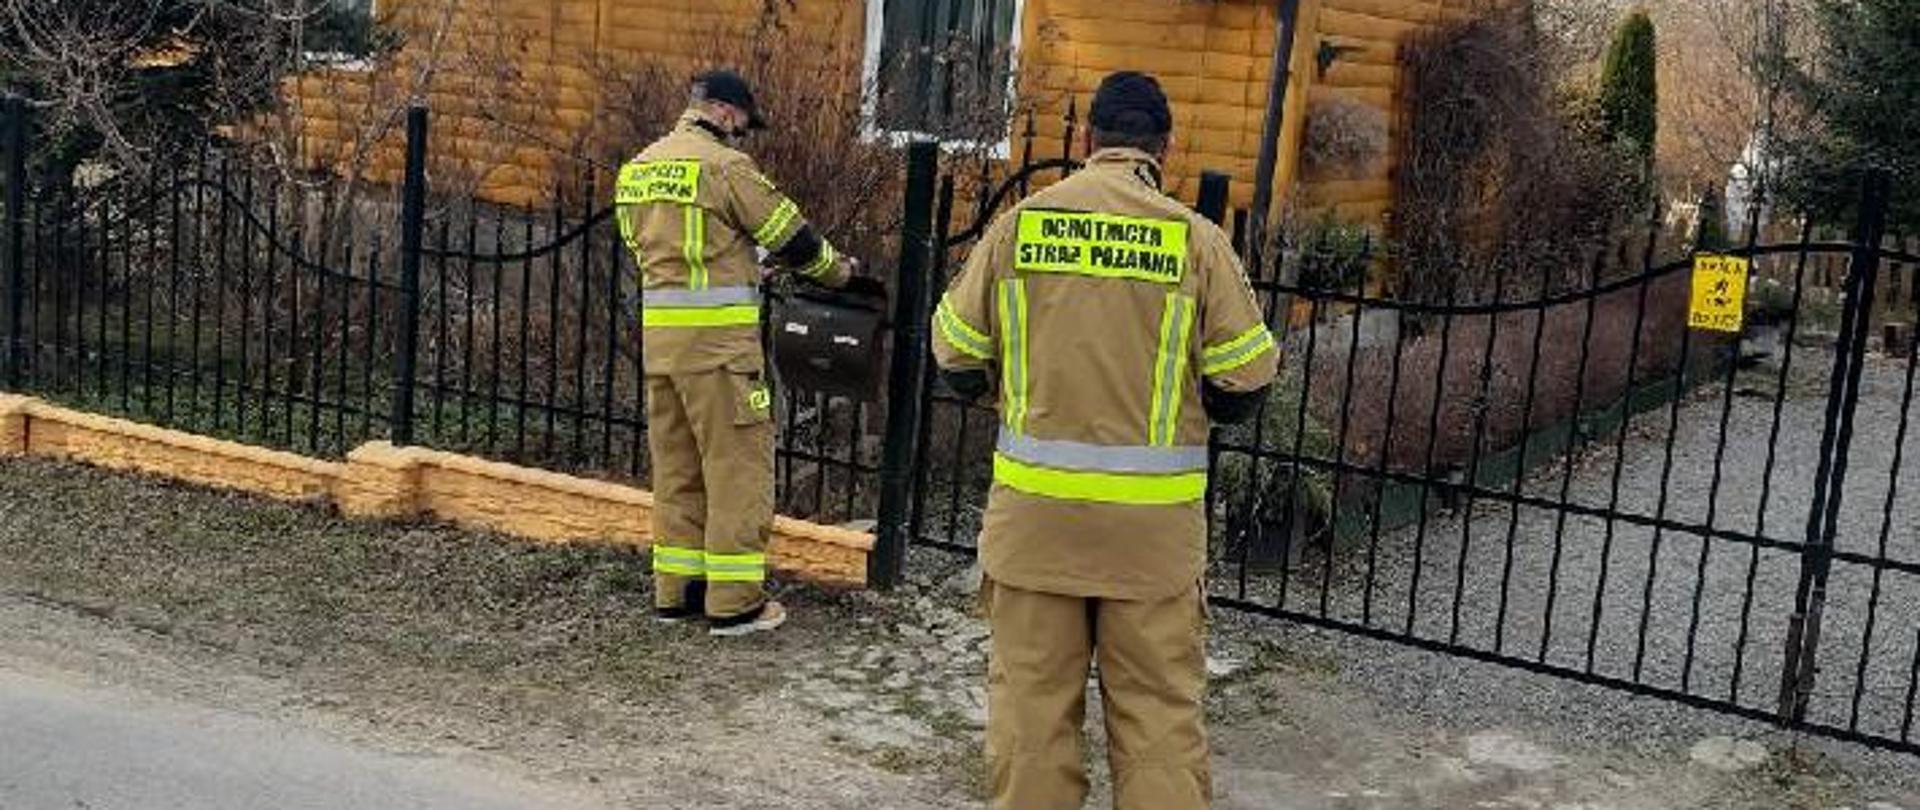 Zdjęcie przedstawia 2 strażaków OSP stojących przed bramą do posesji. Strażacy wkładają ulotkę informacyjną do skrzynki na listy